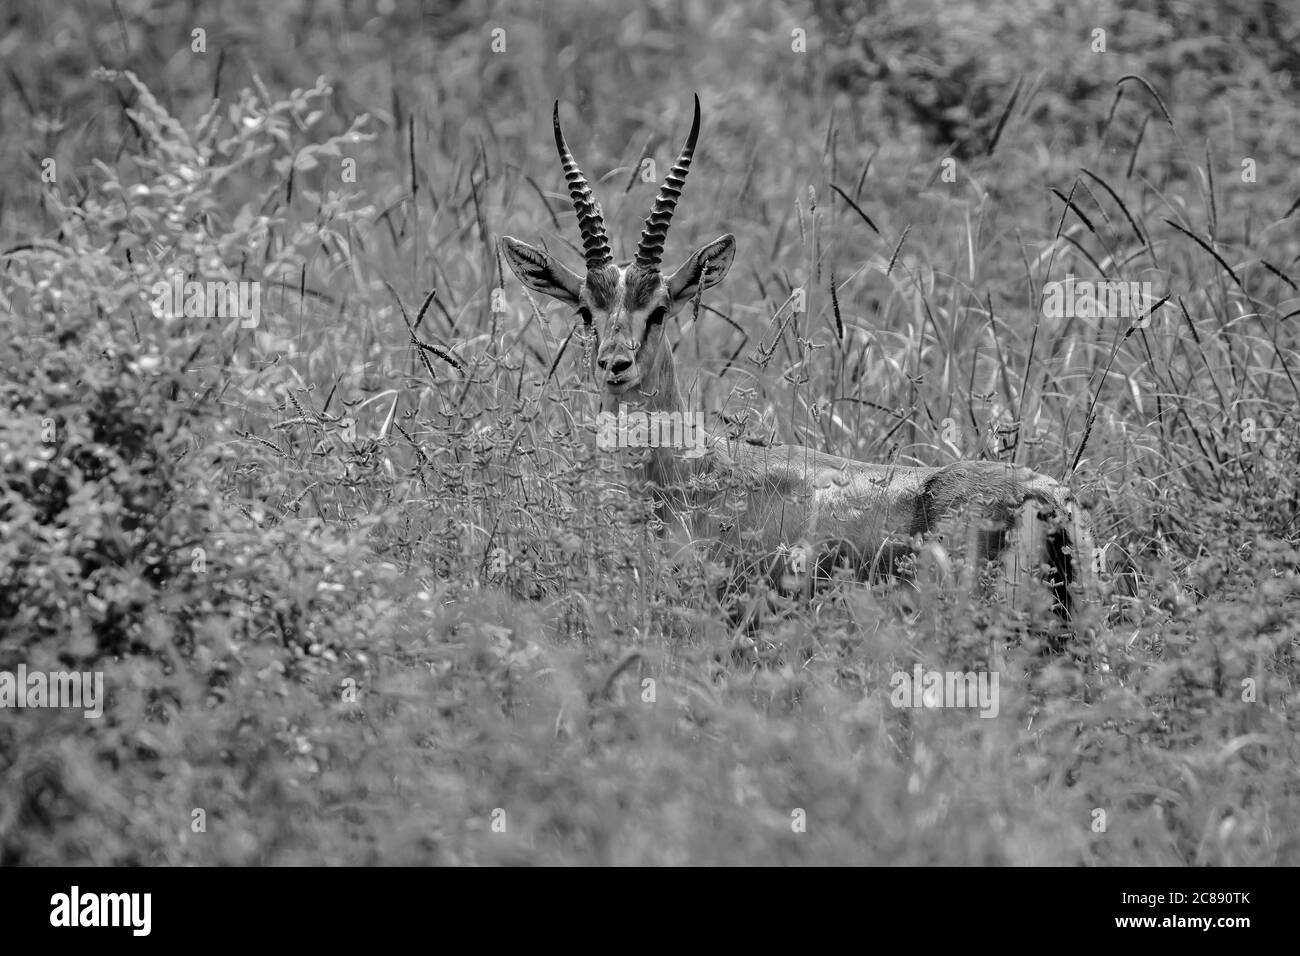 Un'immagine monocromatica di un antilope indiano gazelle chiamato anche Chinkara con grandi corna appuntite che si erigano davanti alle praterie Del Rajasthan India Foto Stock